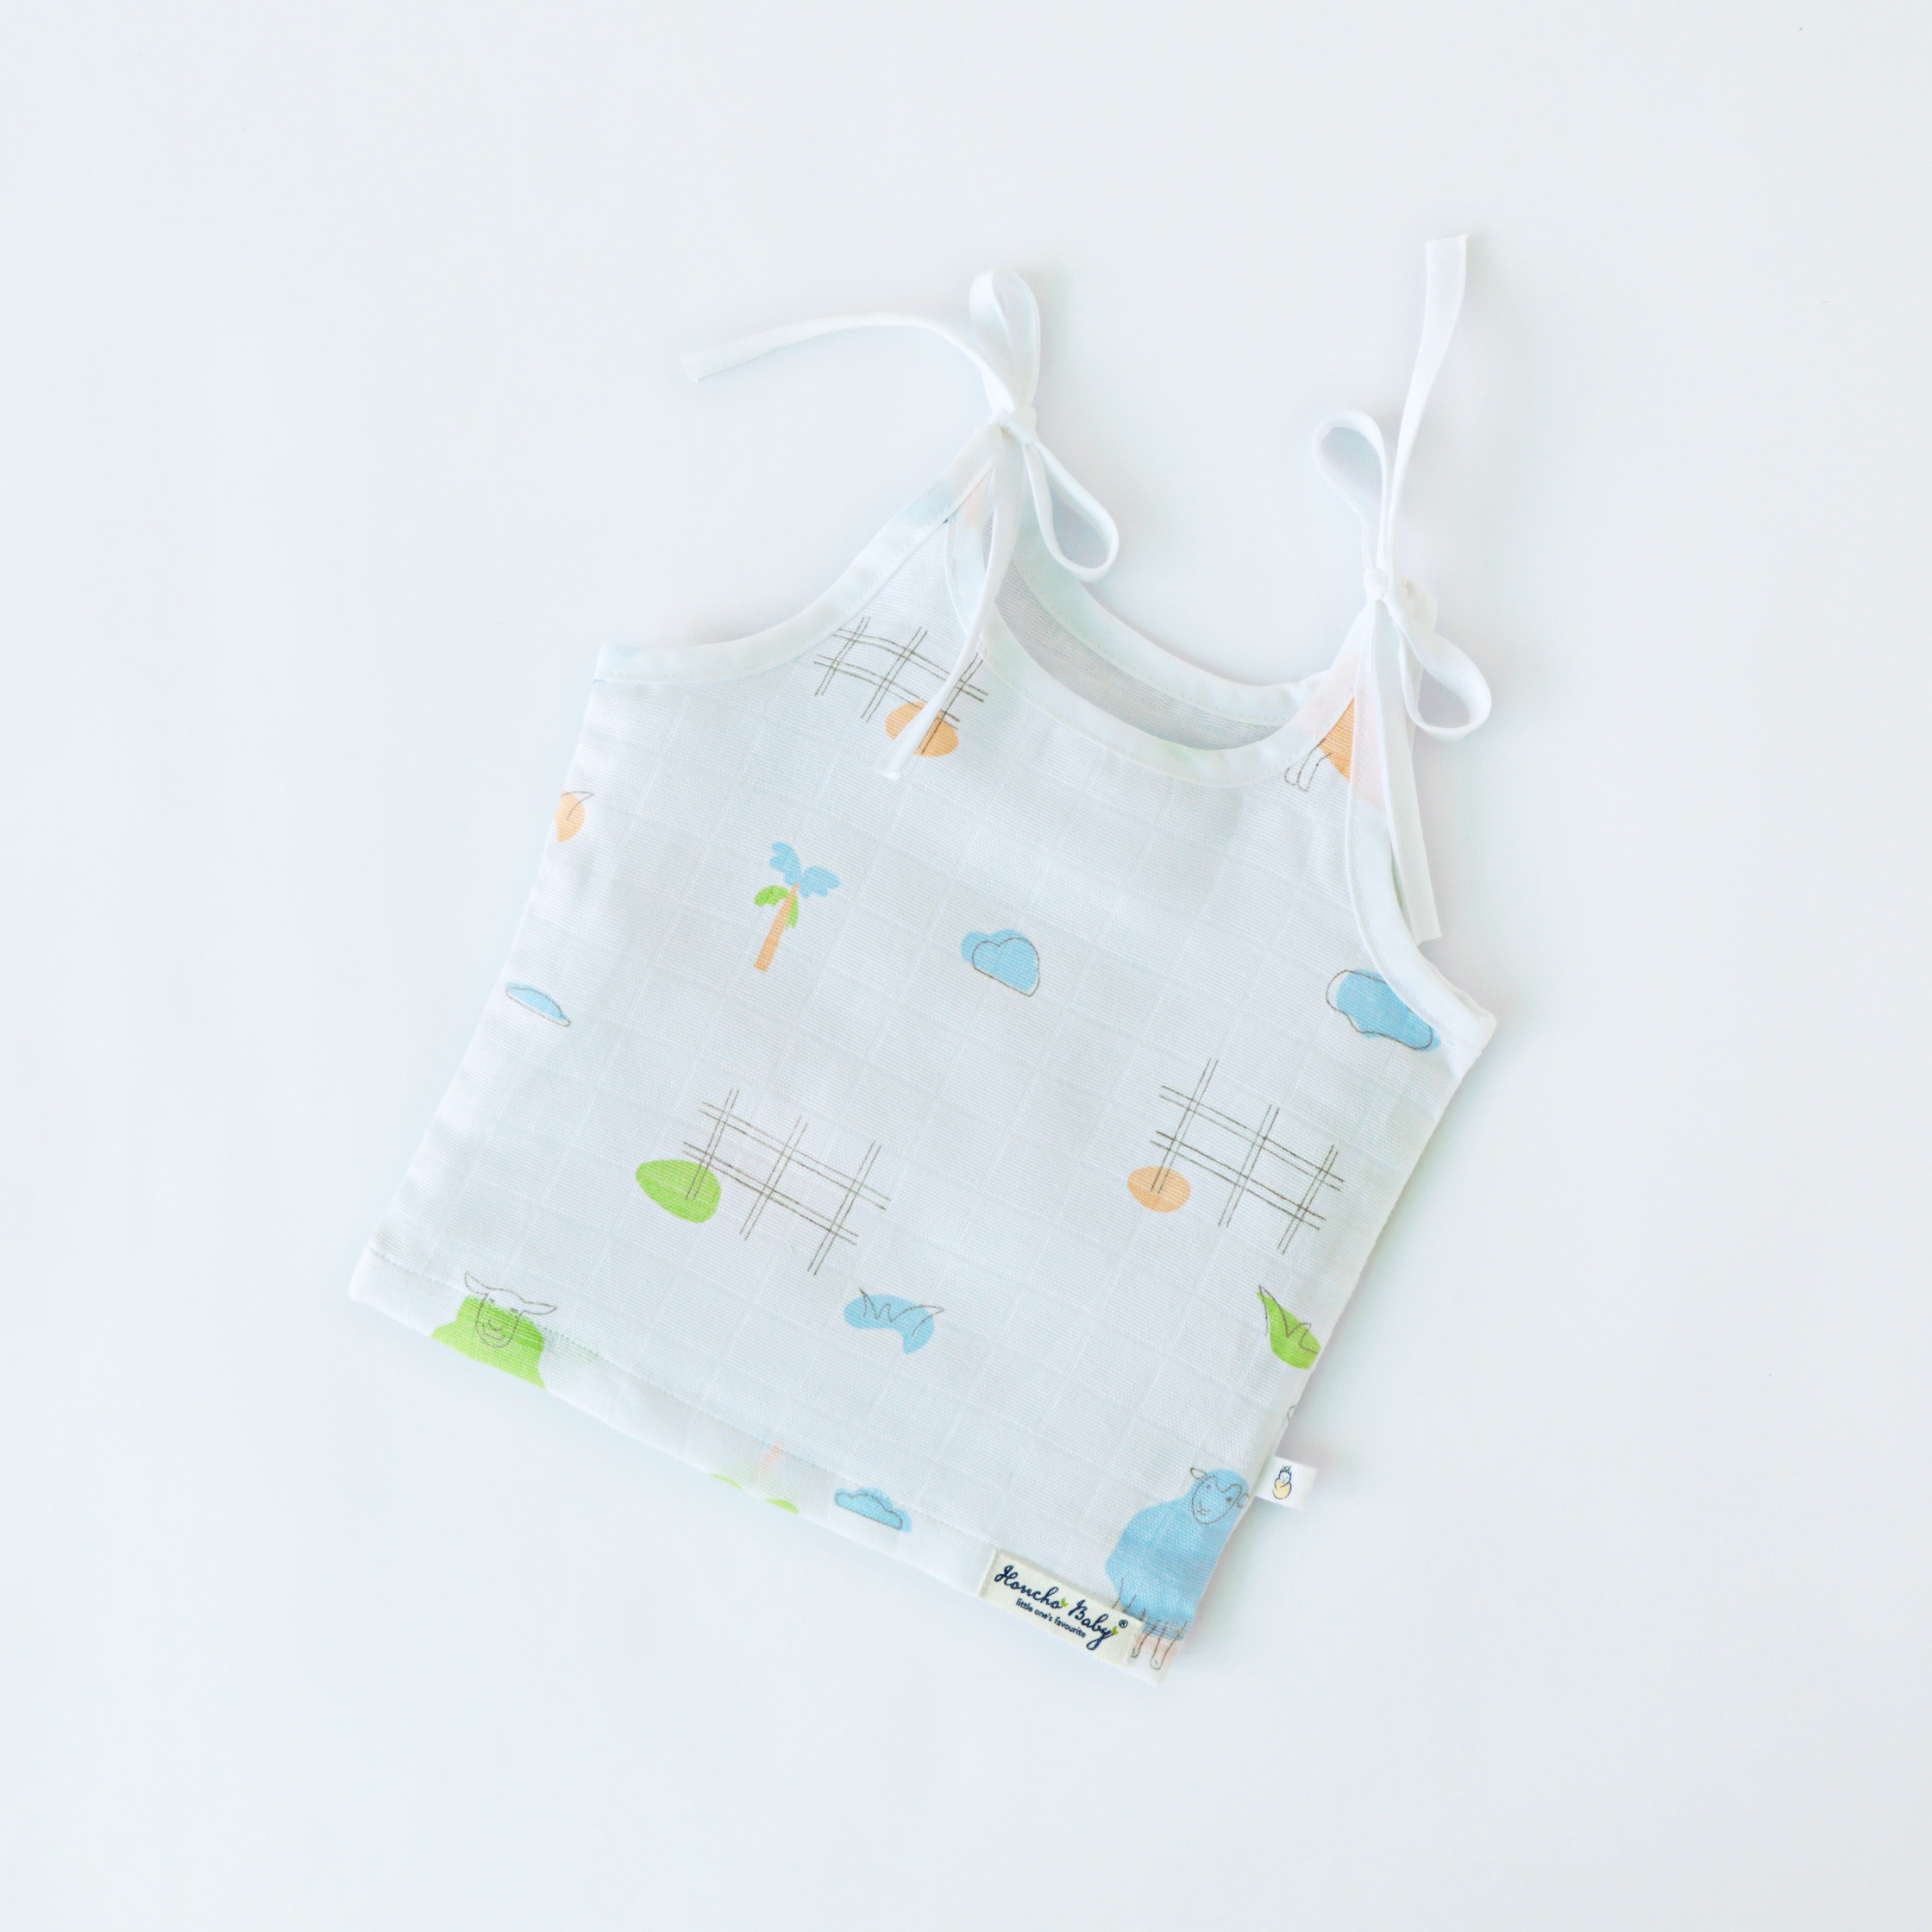 Baby essential Starter gift Kit - 6 piece set - Woolly Wonderland